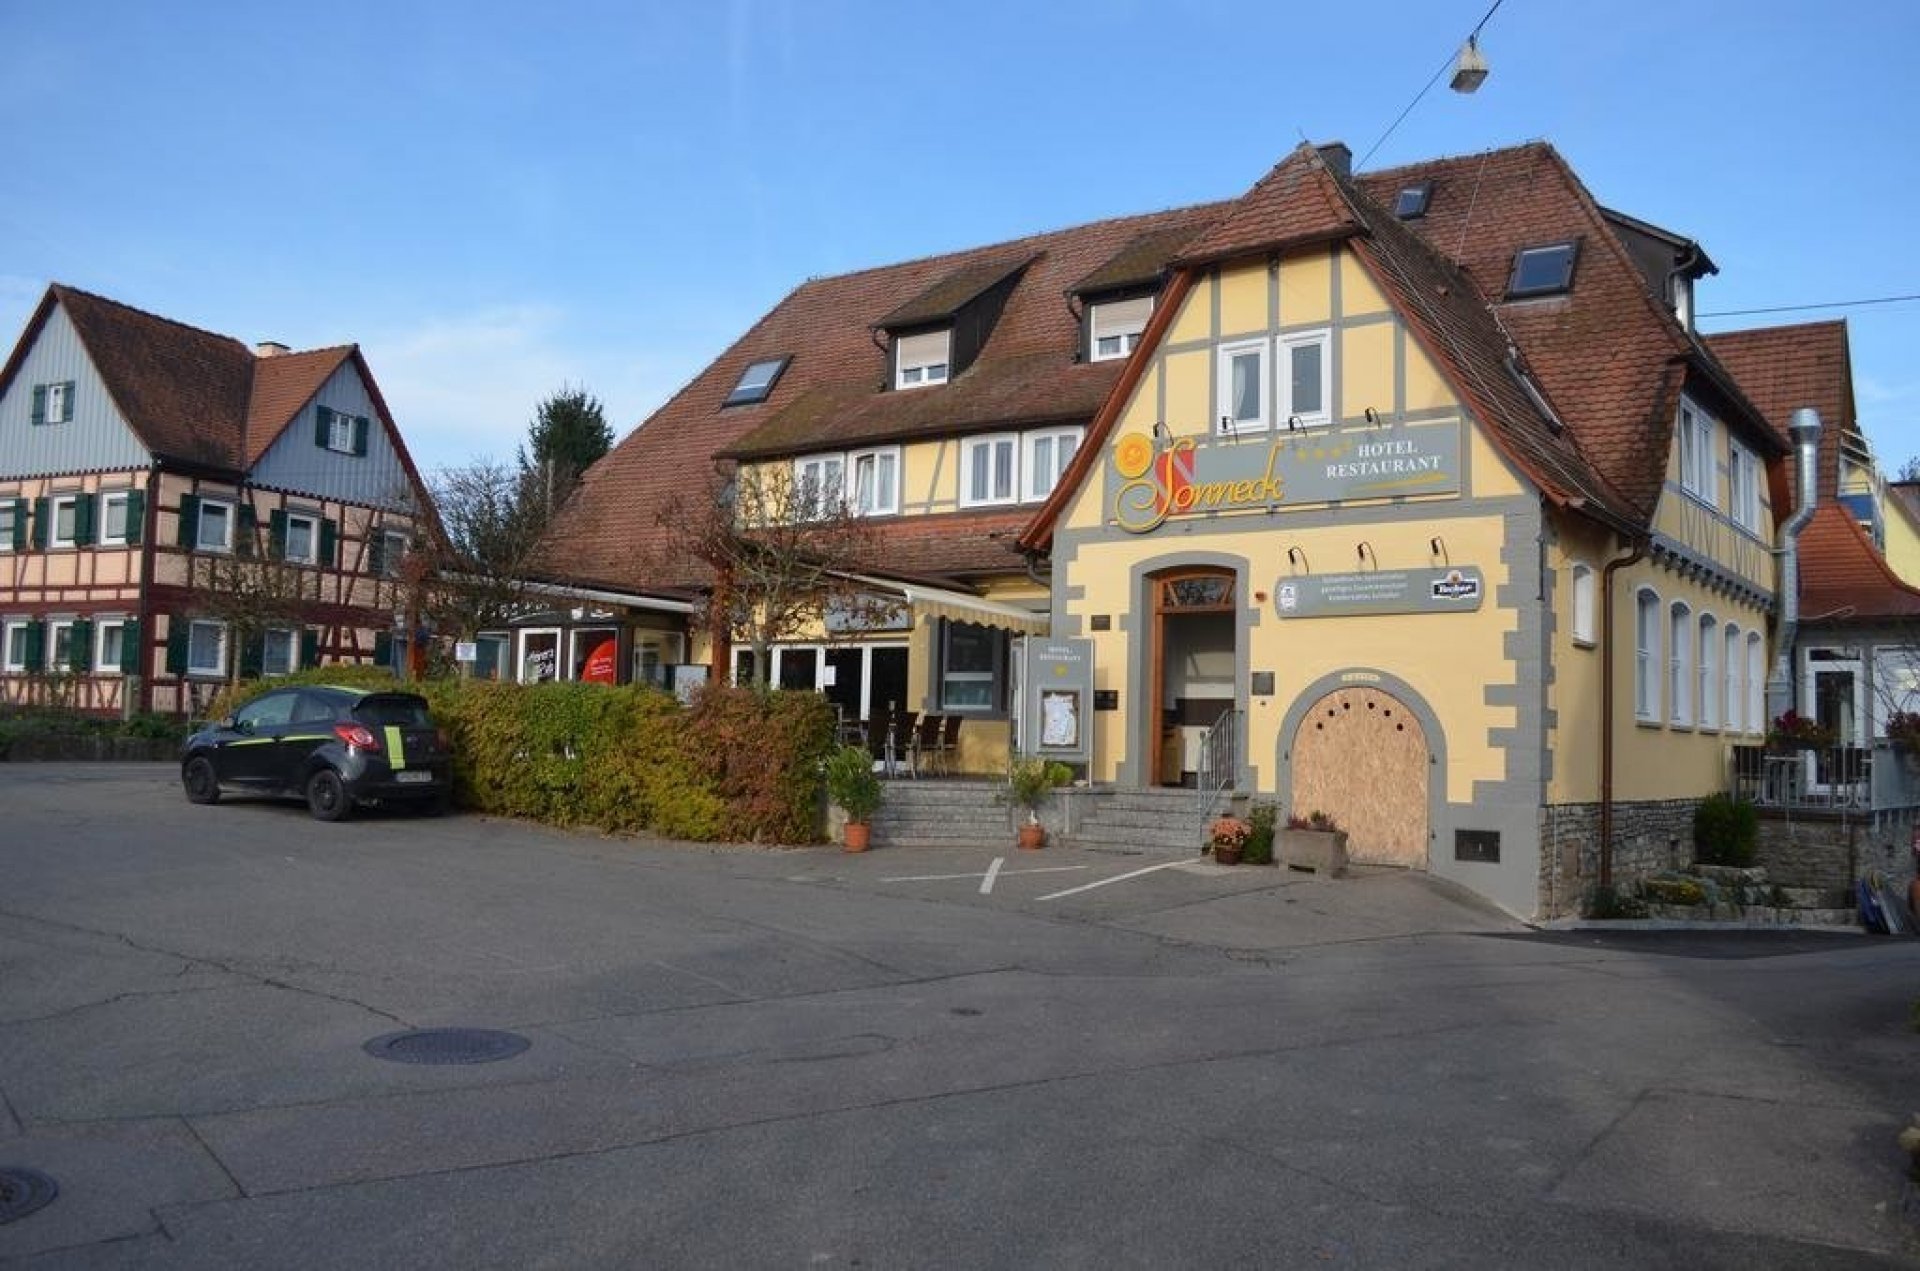 Wohlfühltage im Hohenloher Land – Hotel – Restaurant Sonneck